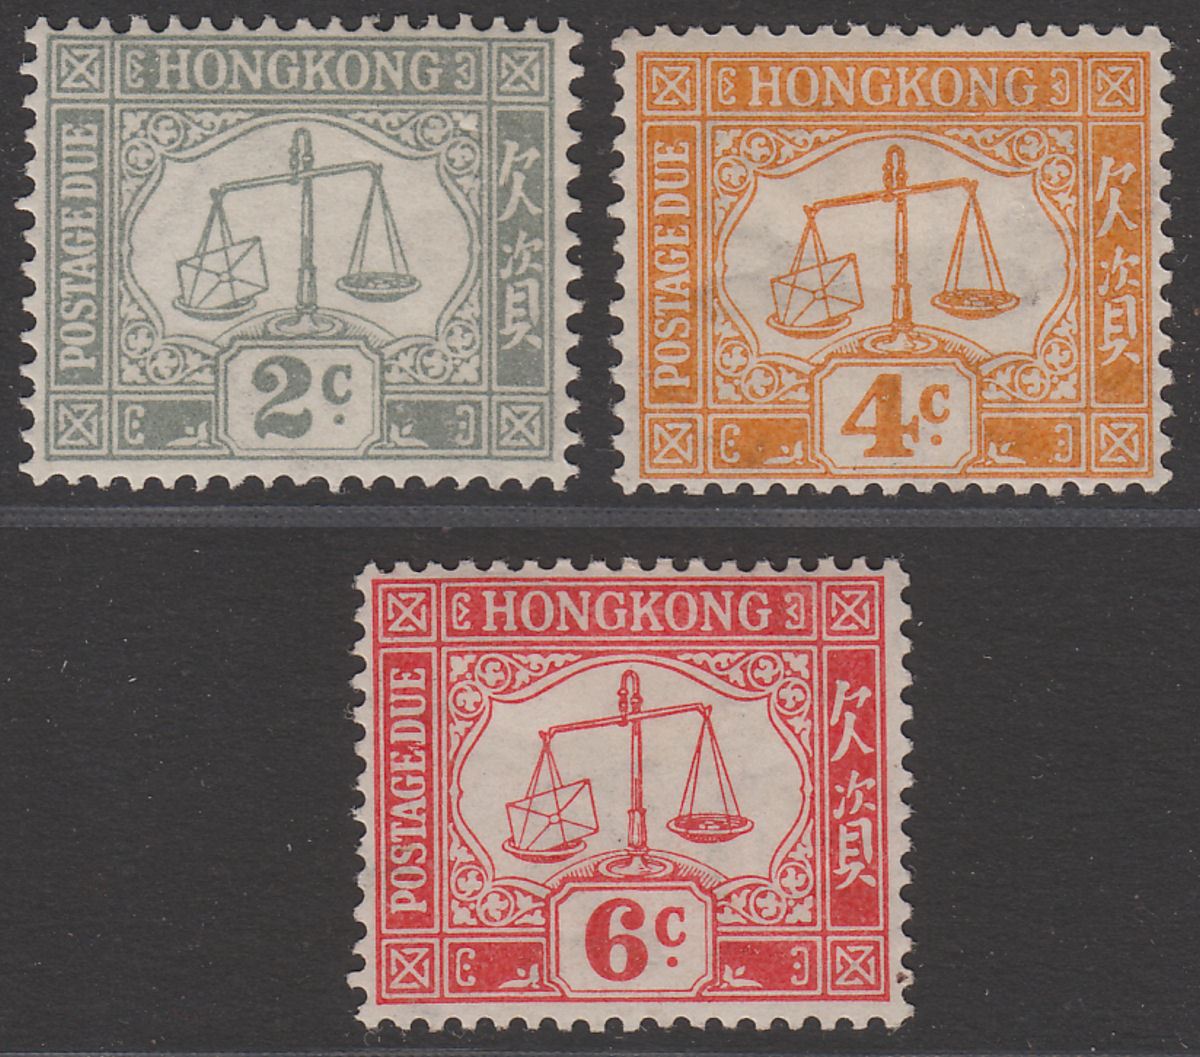 Hong Kong 1938 KGVI Postage Due wmk Sideways 2c, 4c, 6c Mint SG D6-D8